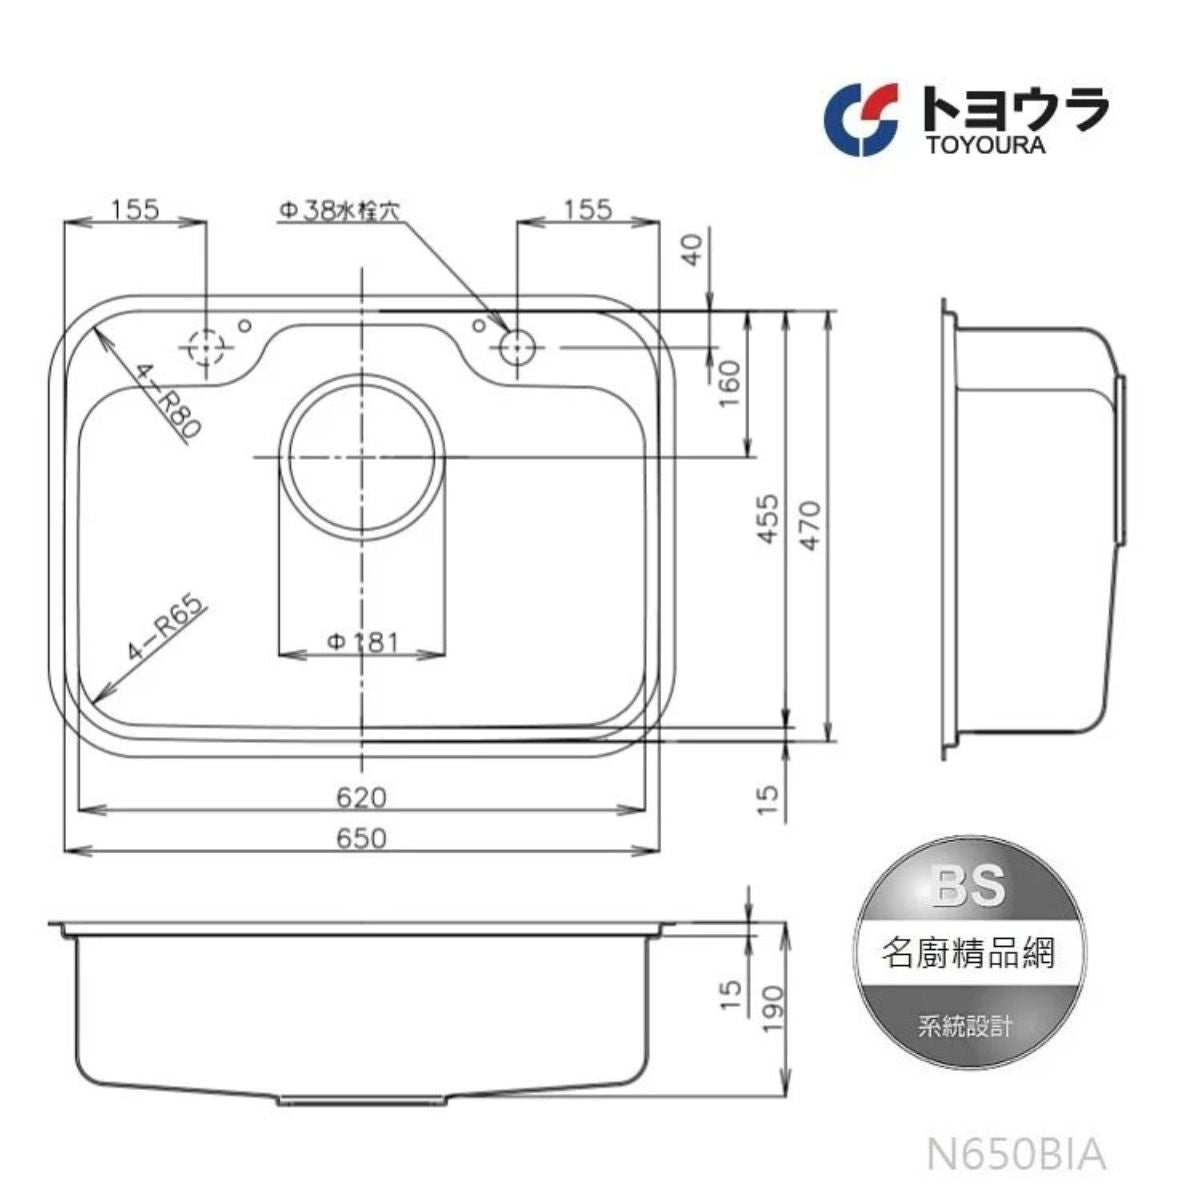 Chậu rửa bát Toyoura N650BIA-EB | Size 650mm | Đồ Nội Địa Nhật